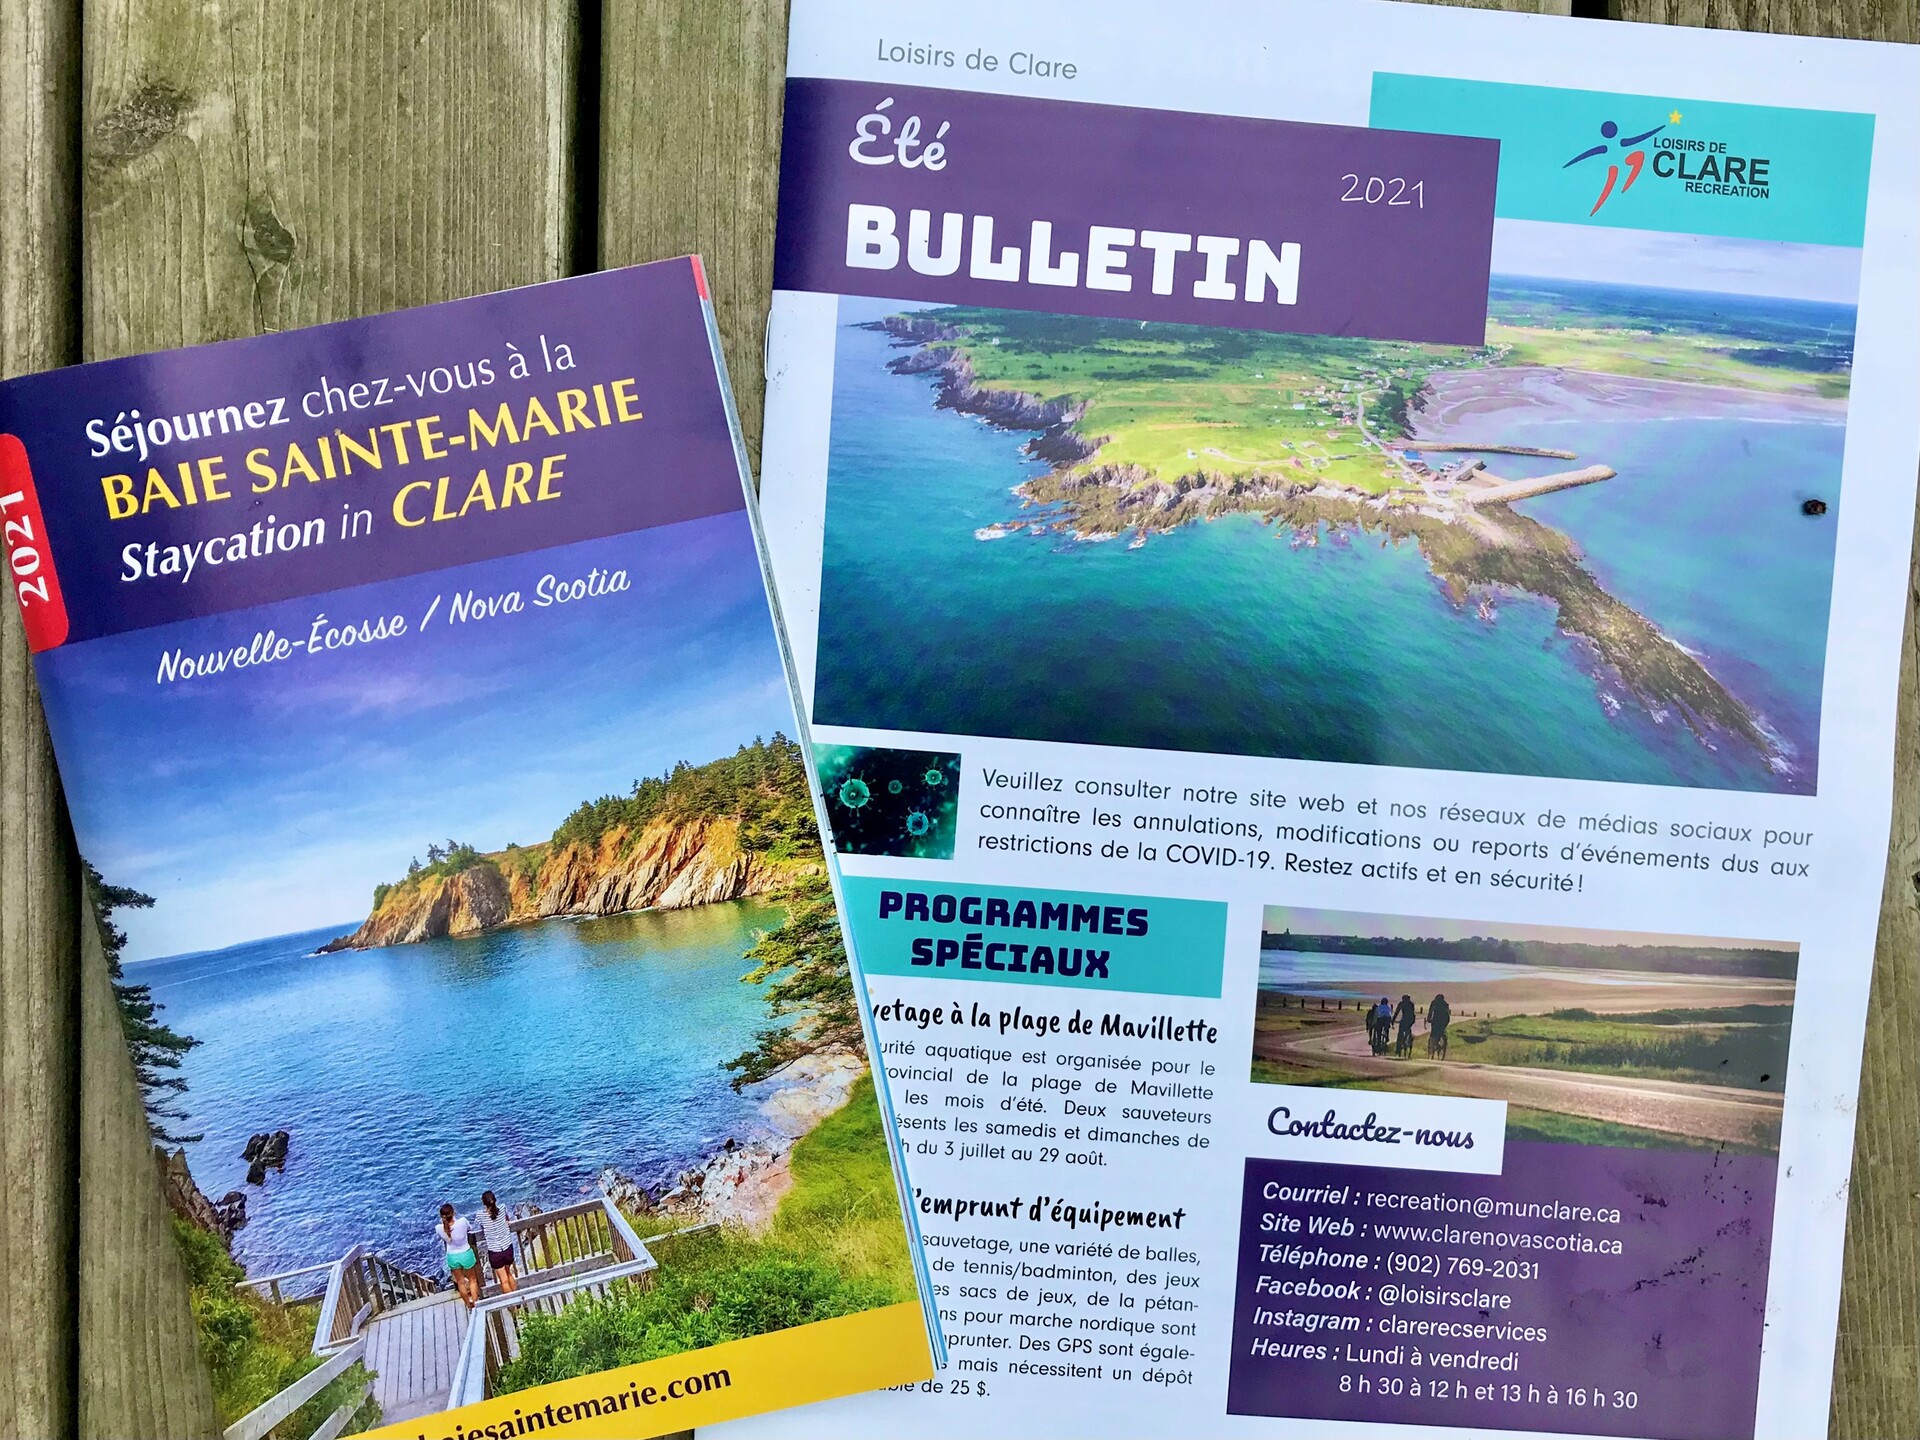 une photo du guide des visiteurs de Clare 2021 et le bulletin du service des Loisirs de Clare